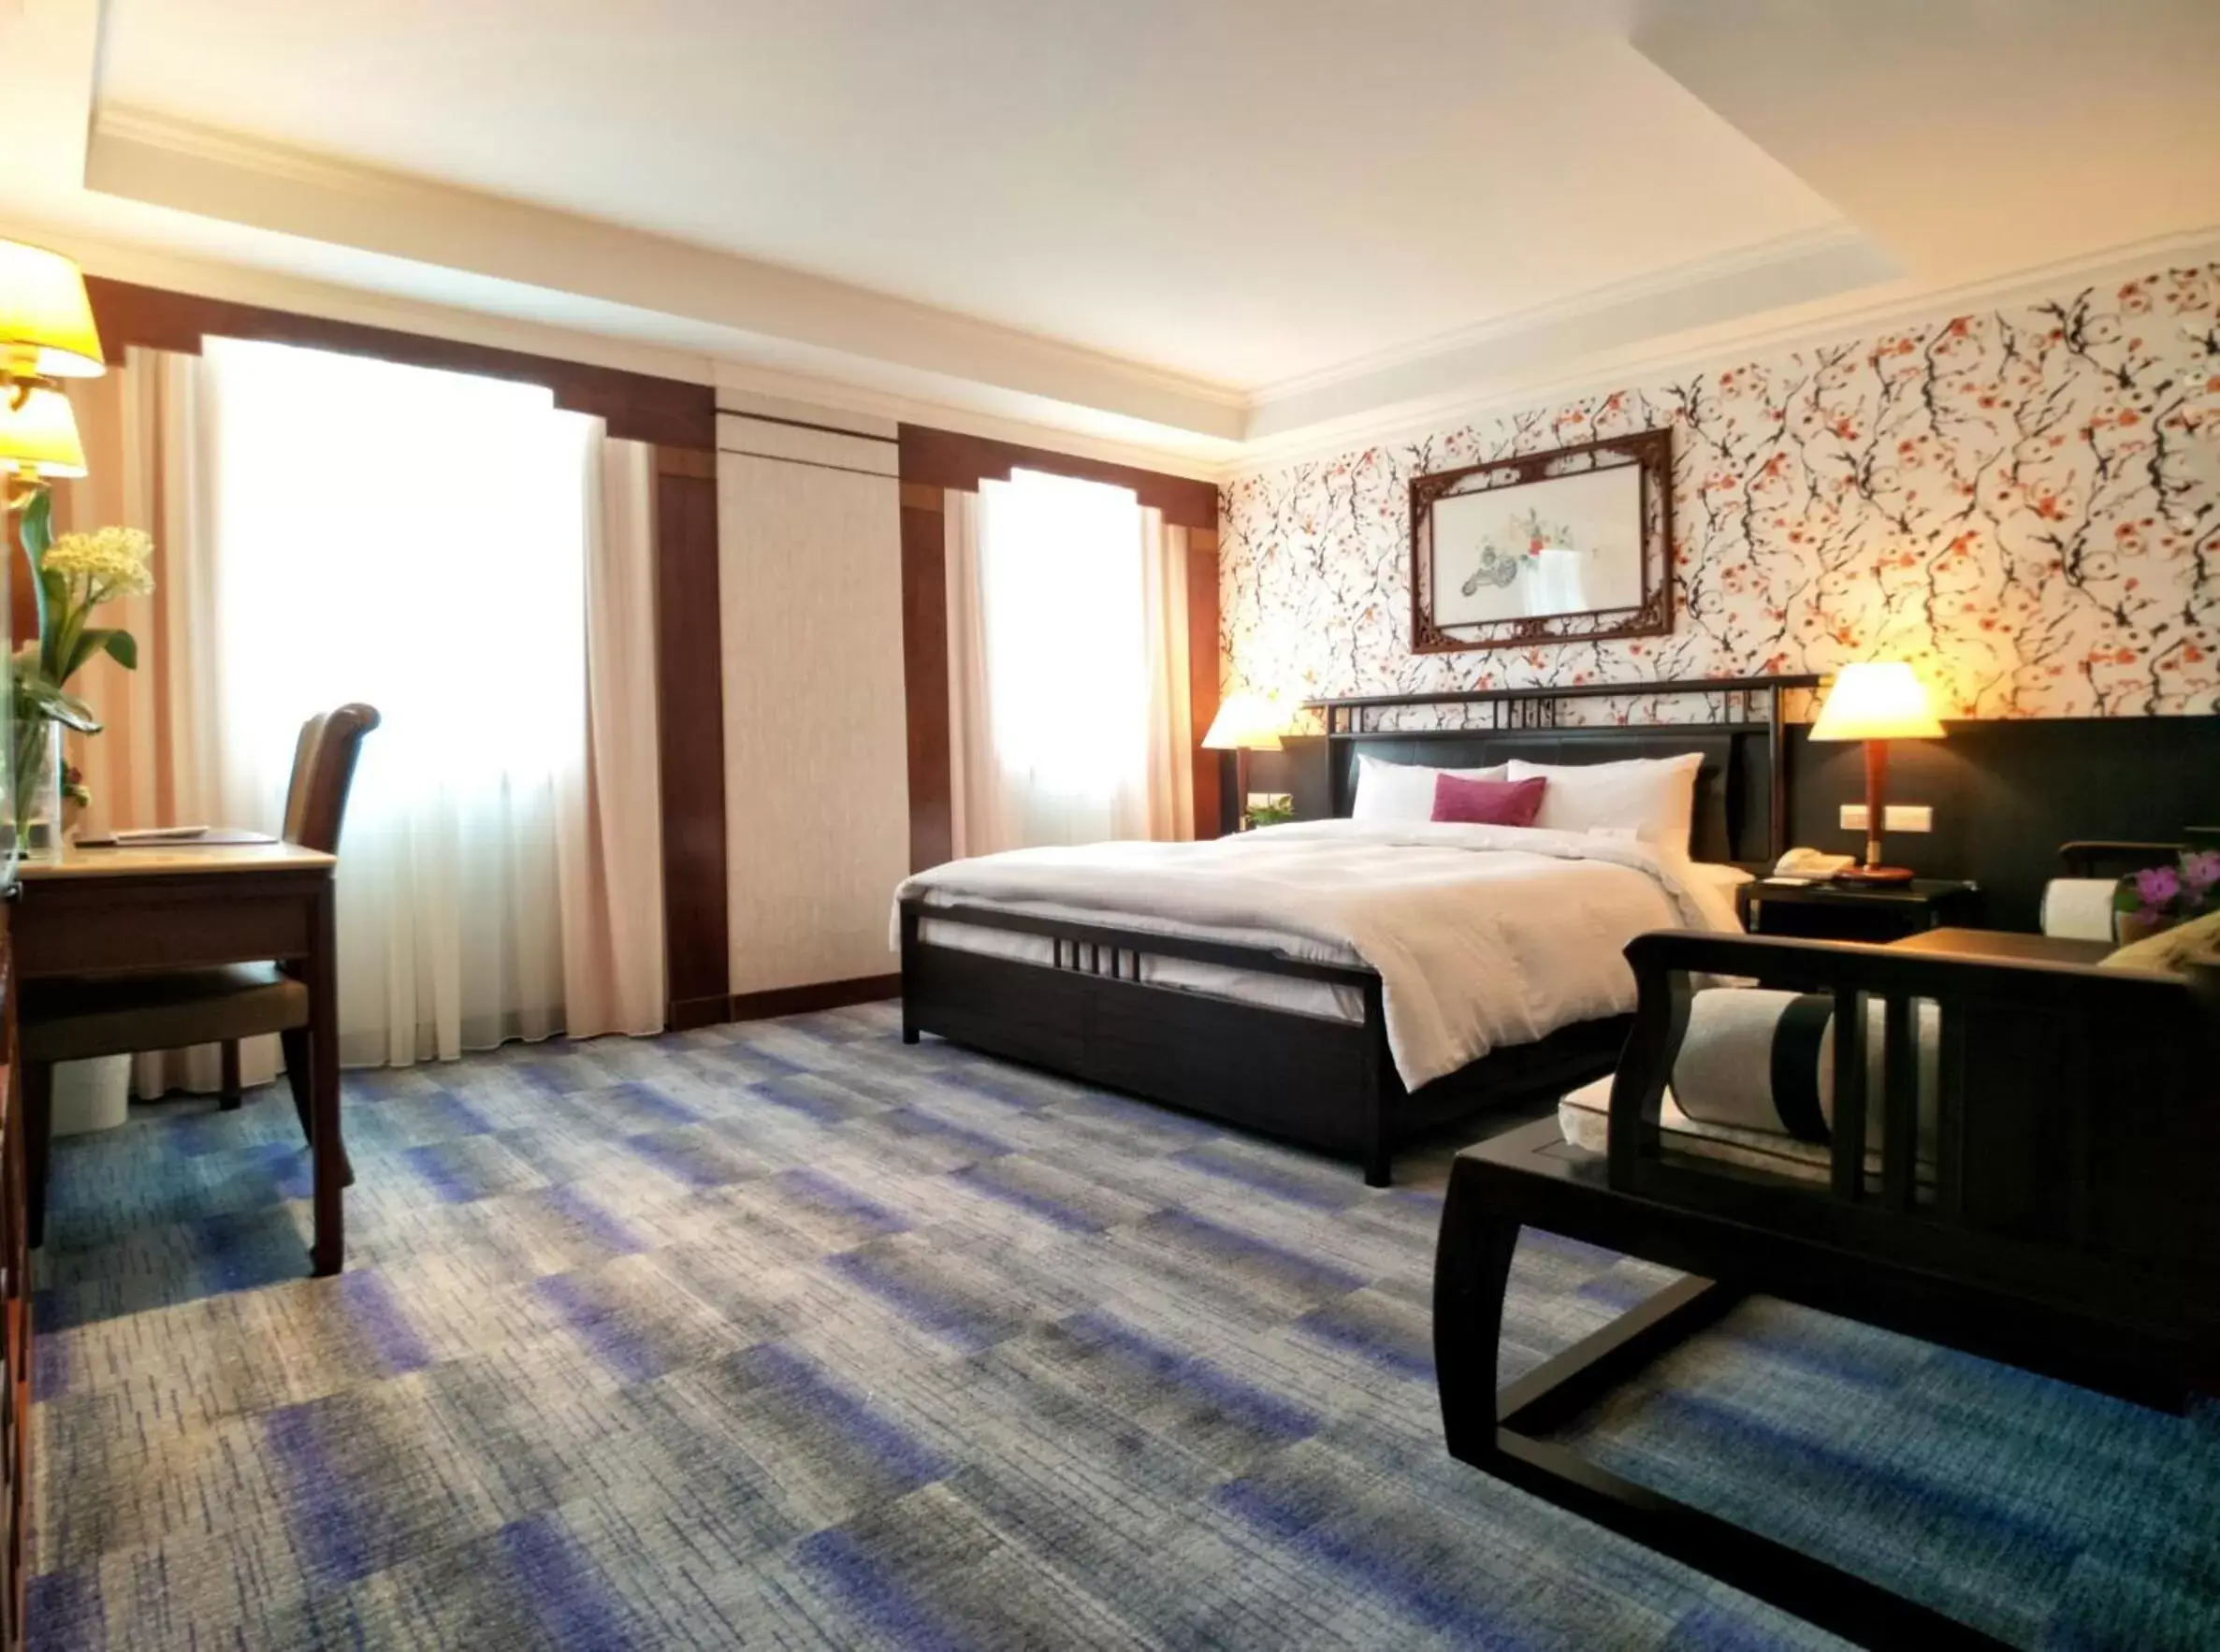 Bedroom, Bed in Beauty Hotels - Star Beauty Resort